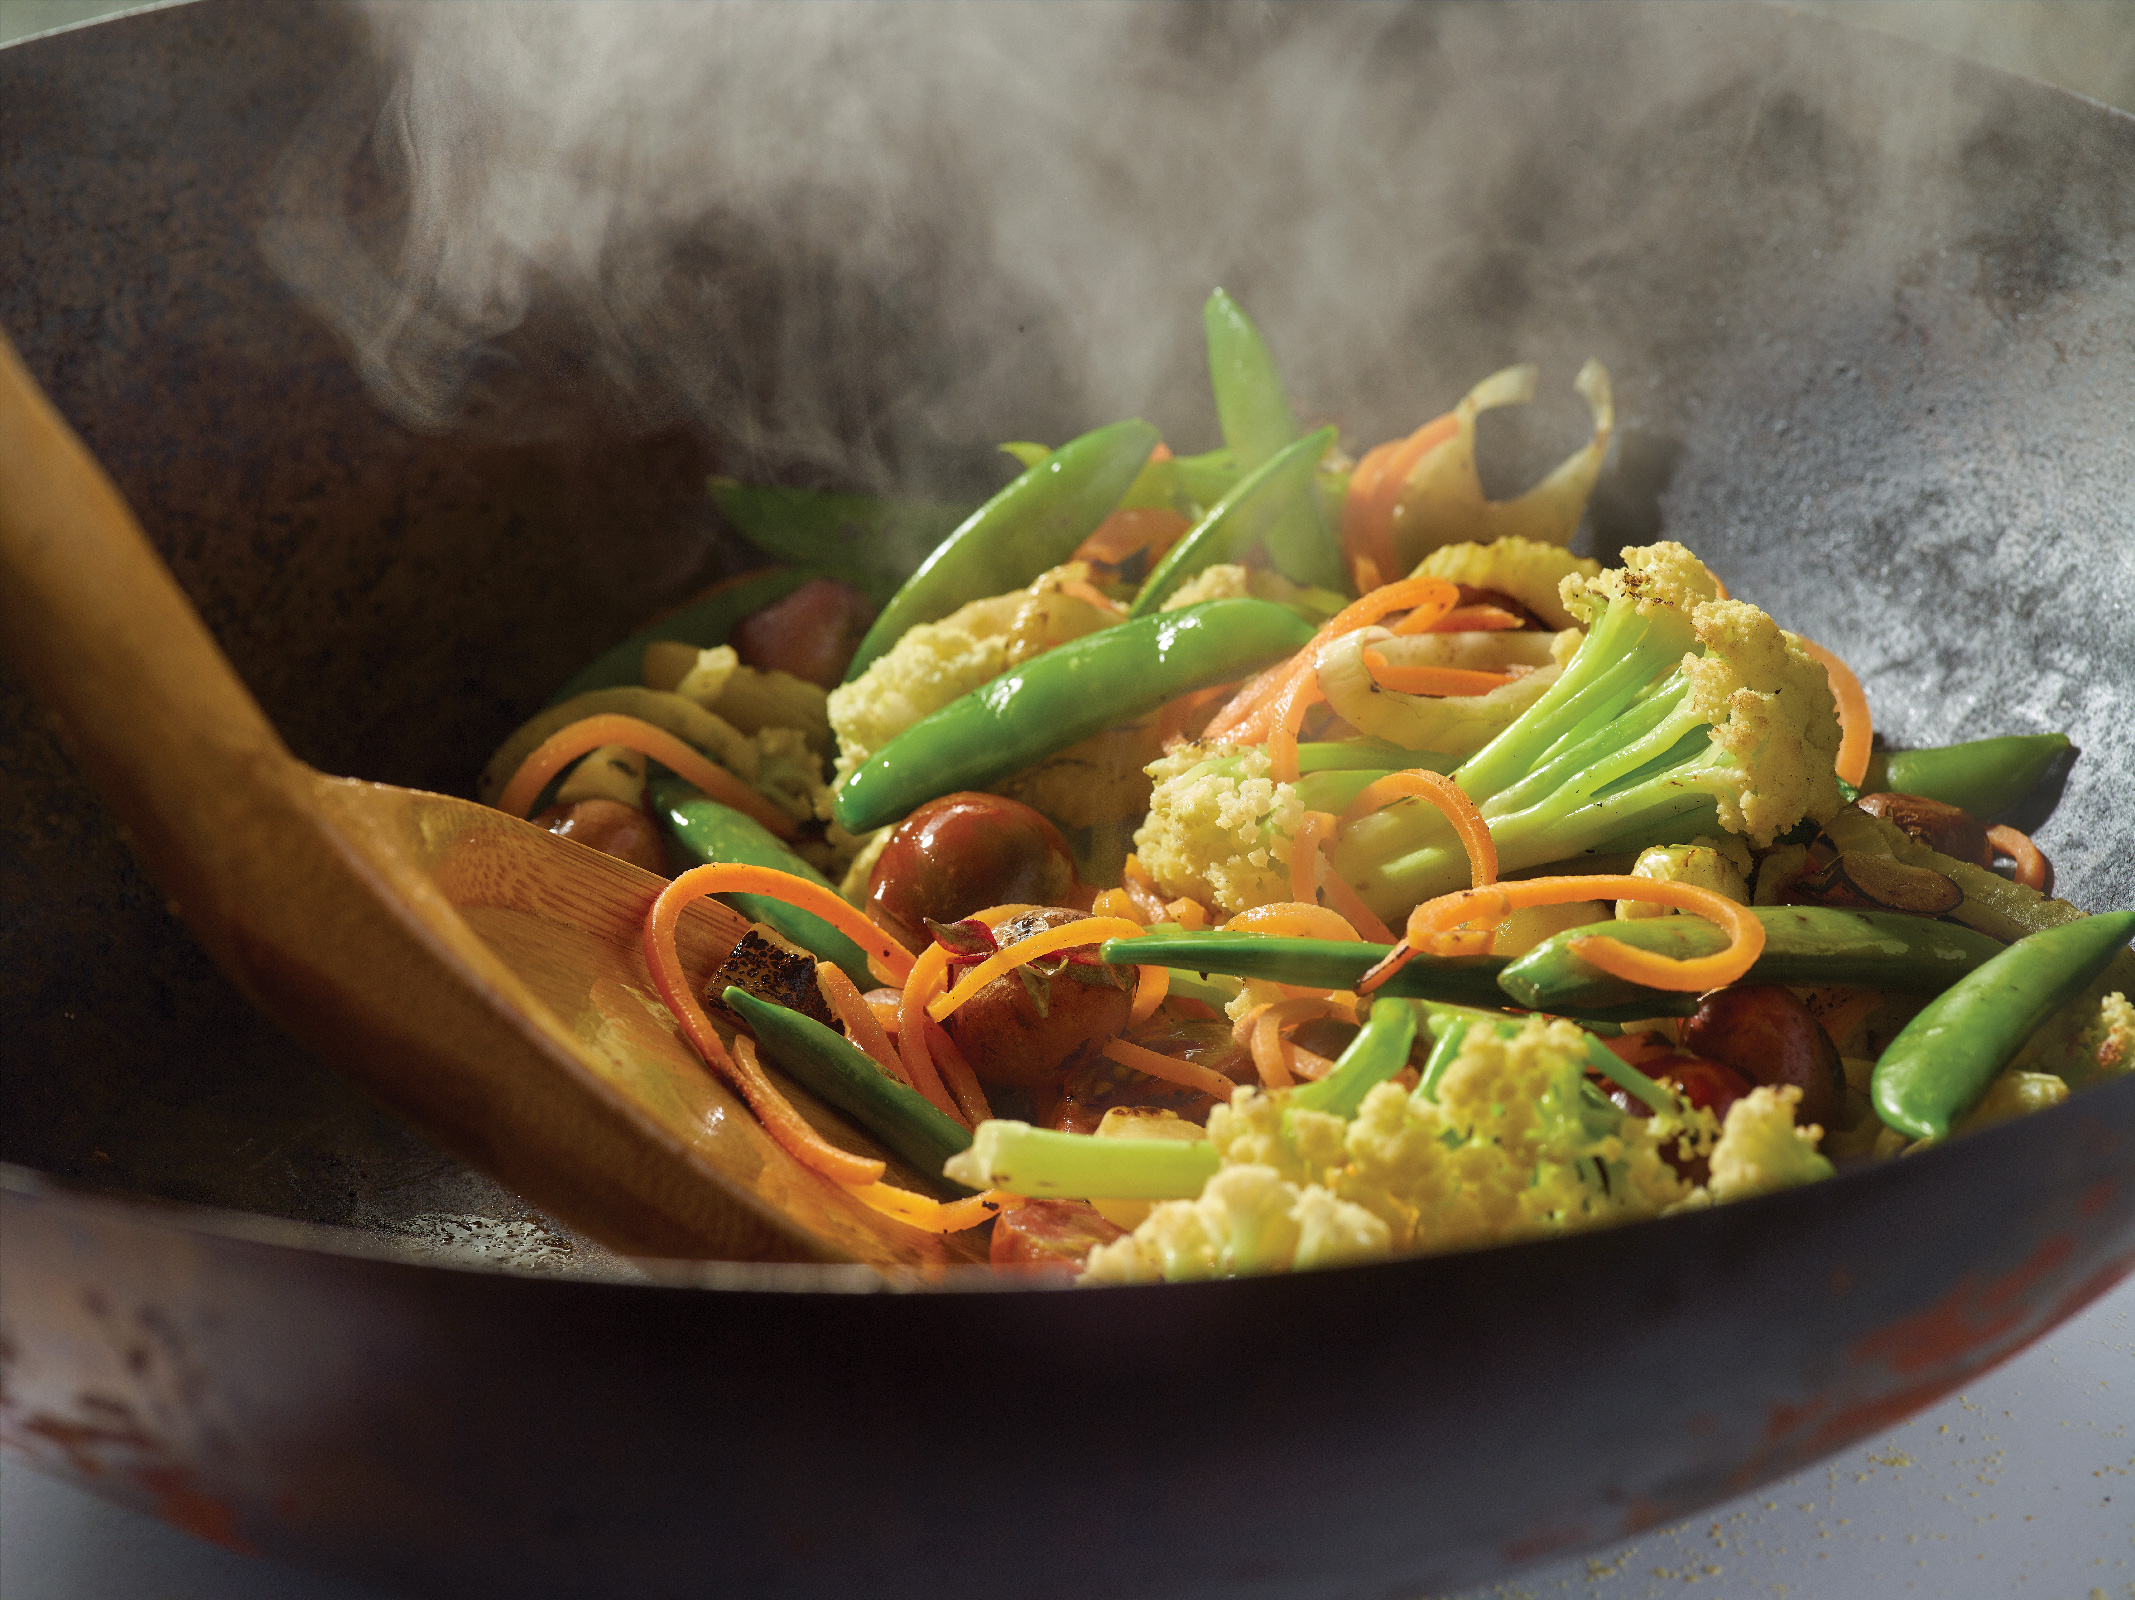 Stirring stir-fry in a wok